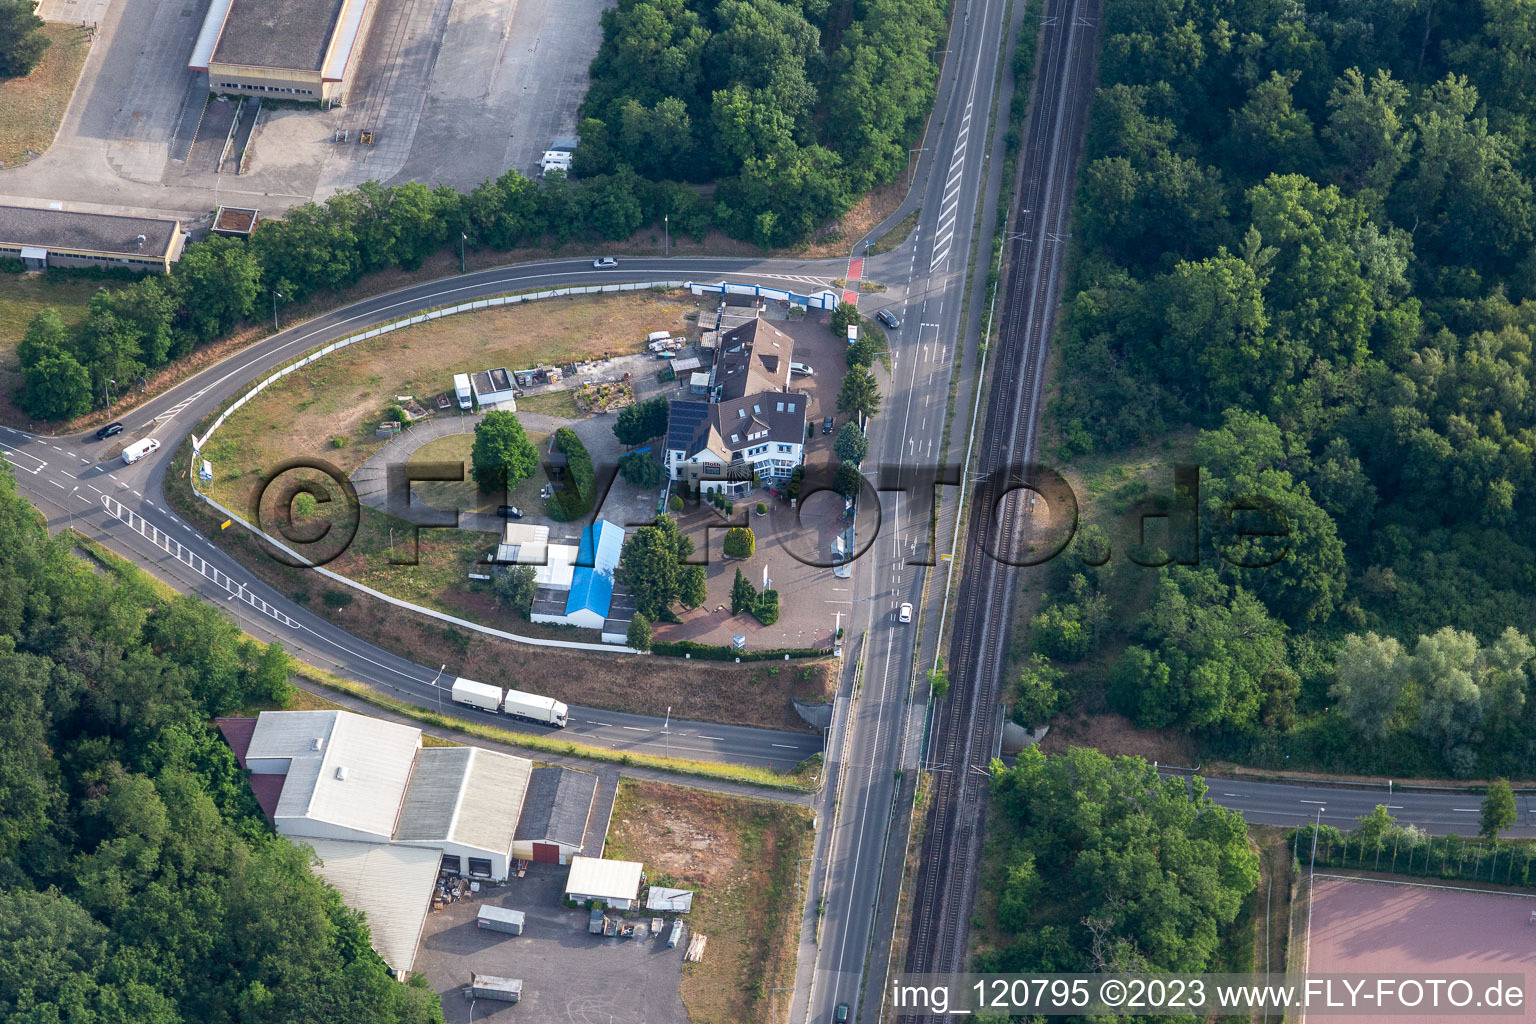 Vue aérienne de Maison de constructeur Roth à le quartier Sondernheim in Germersheim dans le département Rhénanie-Palatinat, Allemagne